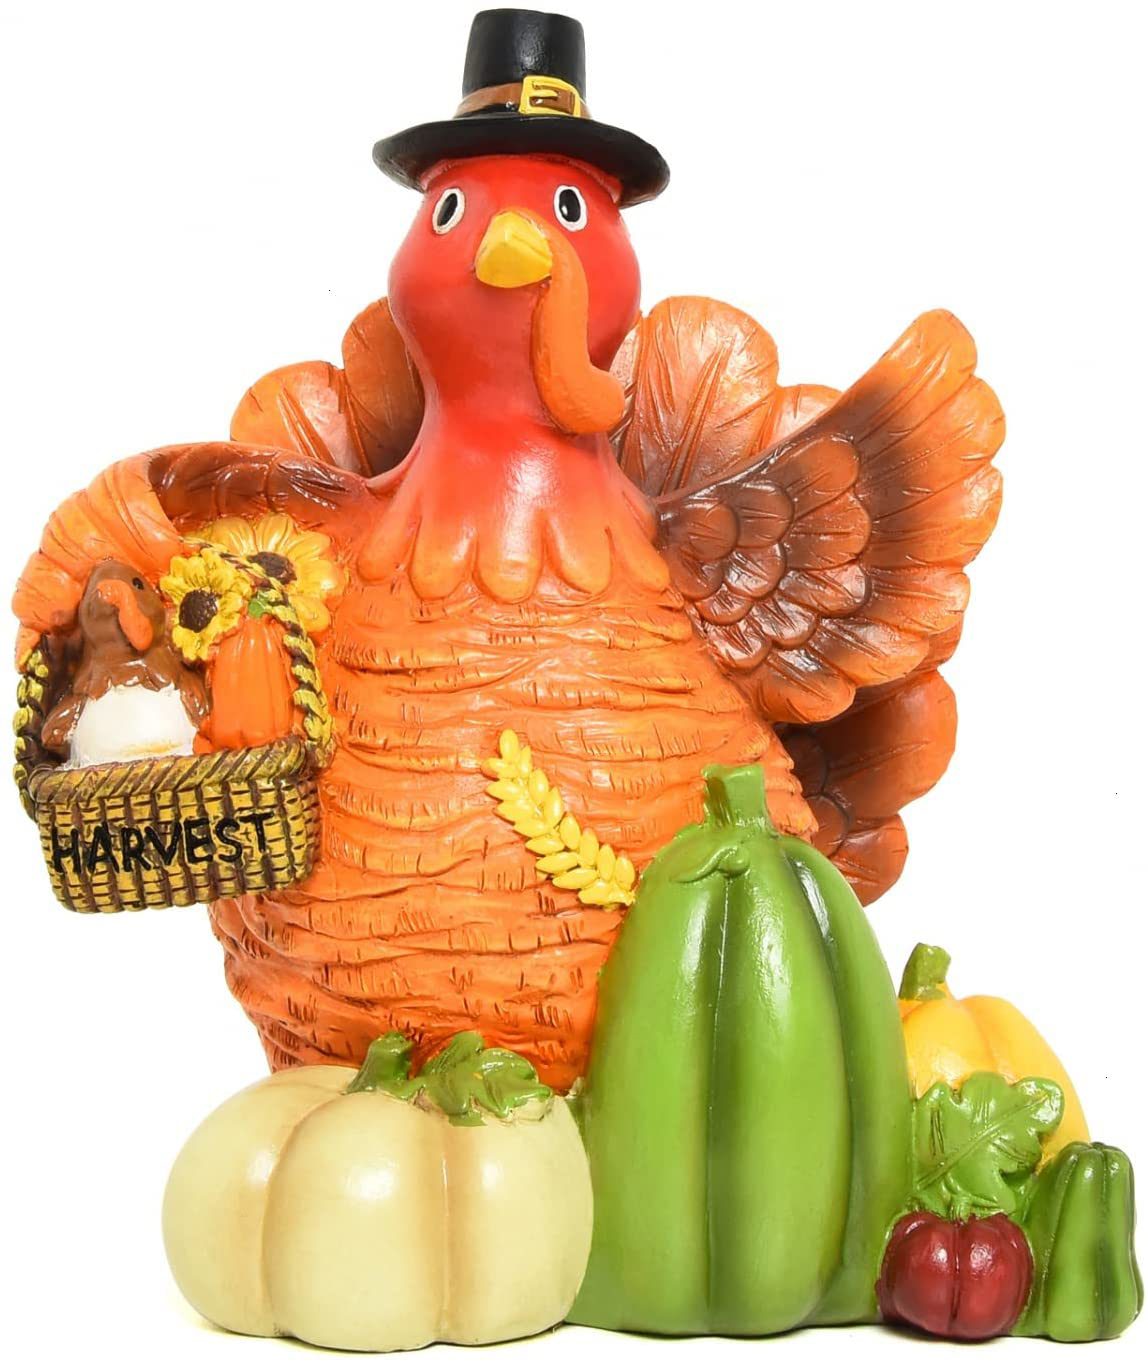 YoleShy Turkey Centerpiece Figurine